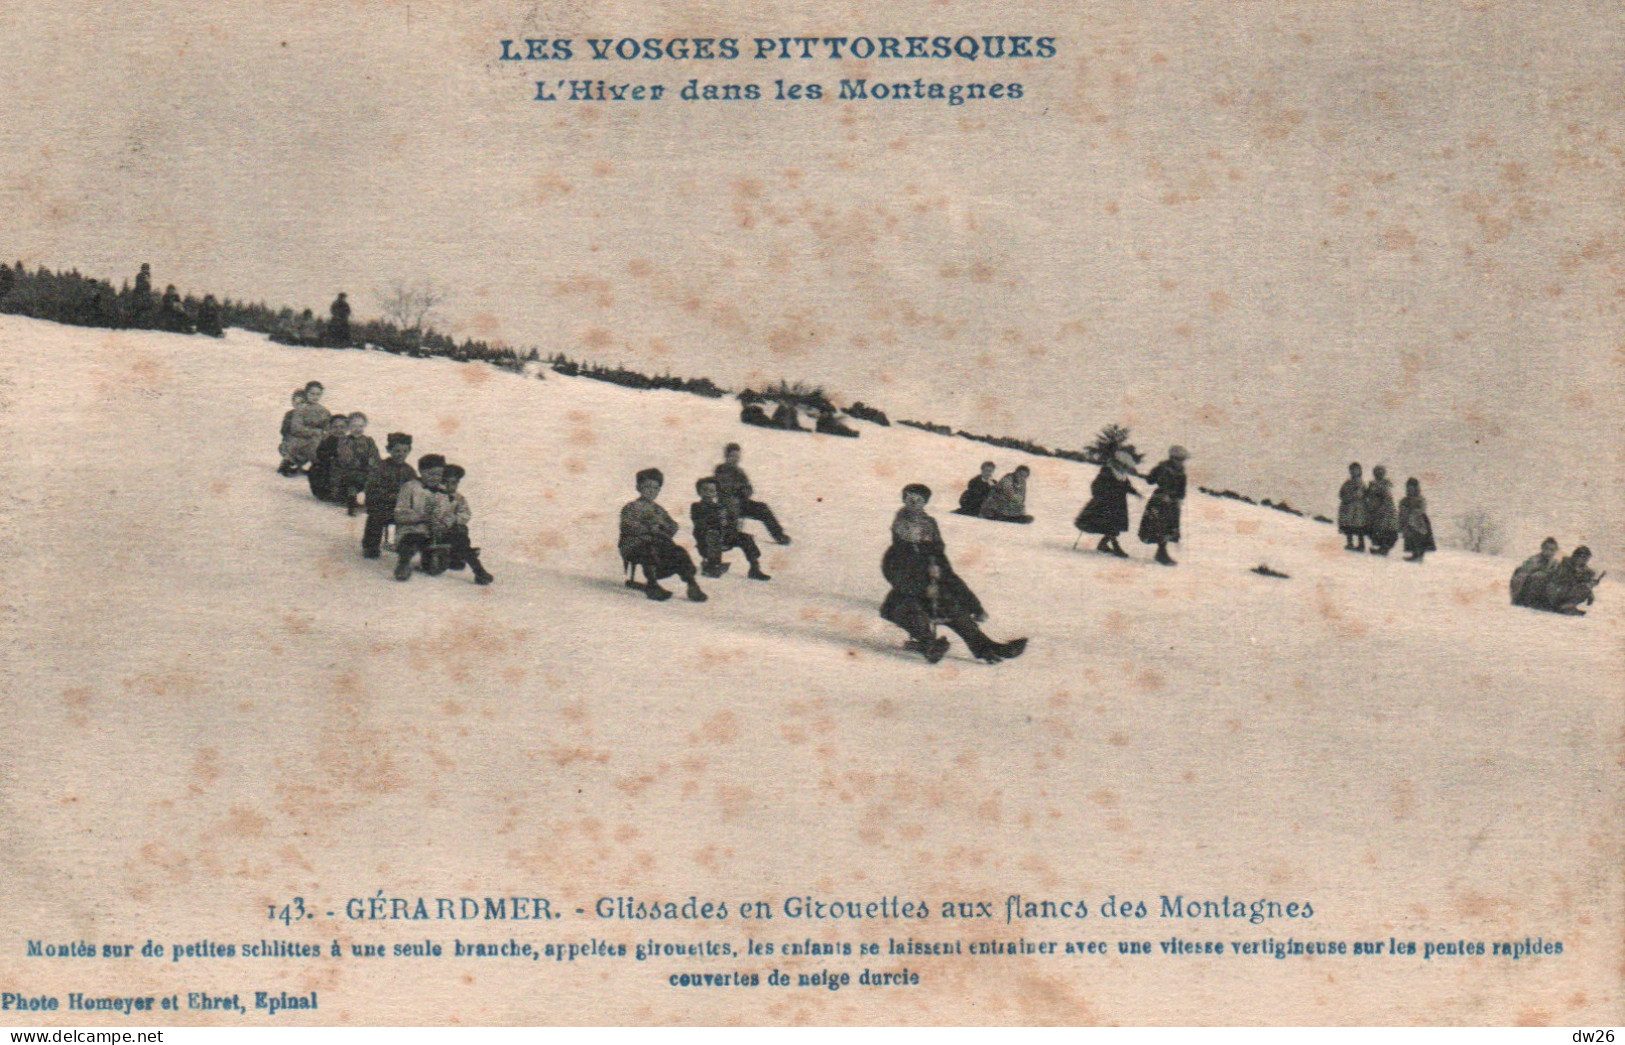 Sports D'Hiver Dans Les Montagnes (Vosges Pittoresques) Gérardmer: Glissades En Girouettes En Luge (Schlittes) - Sports D'hiver